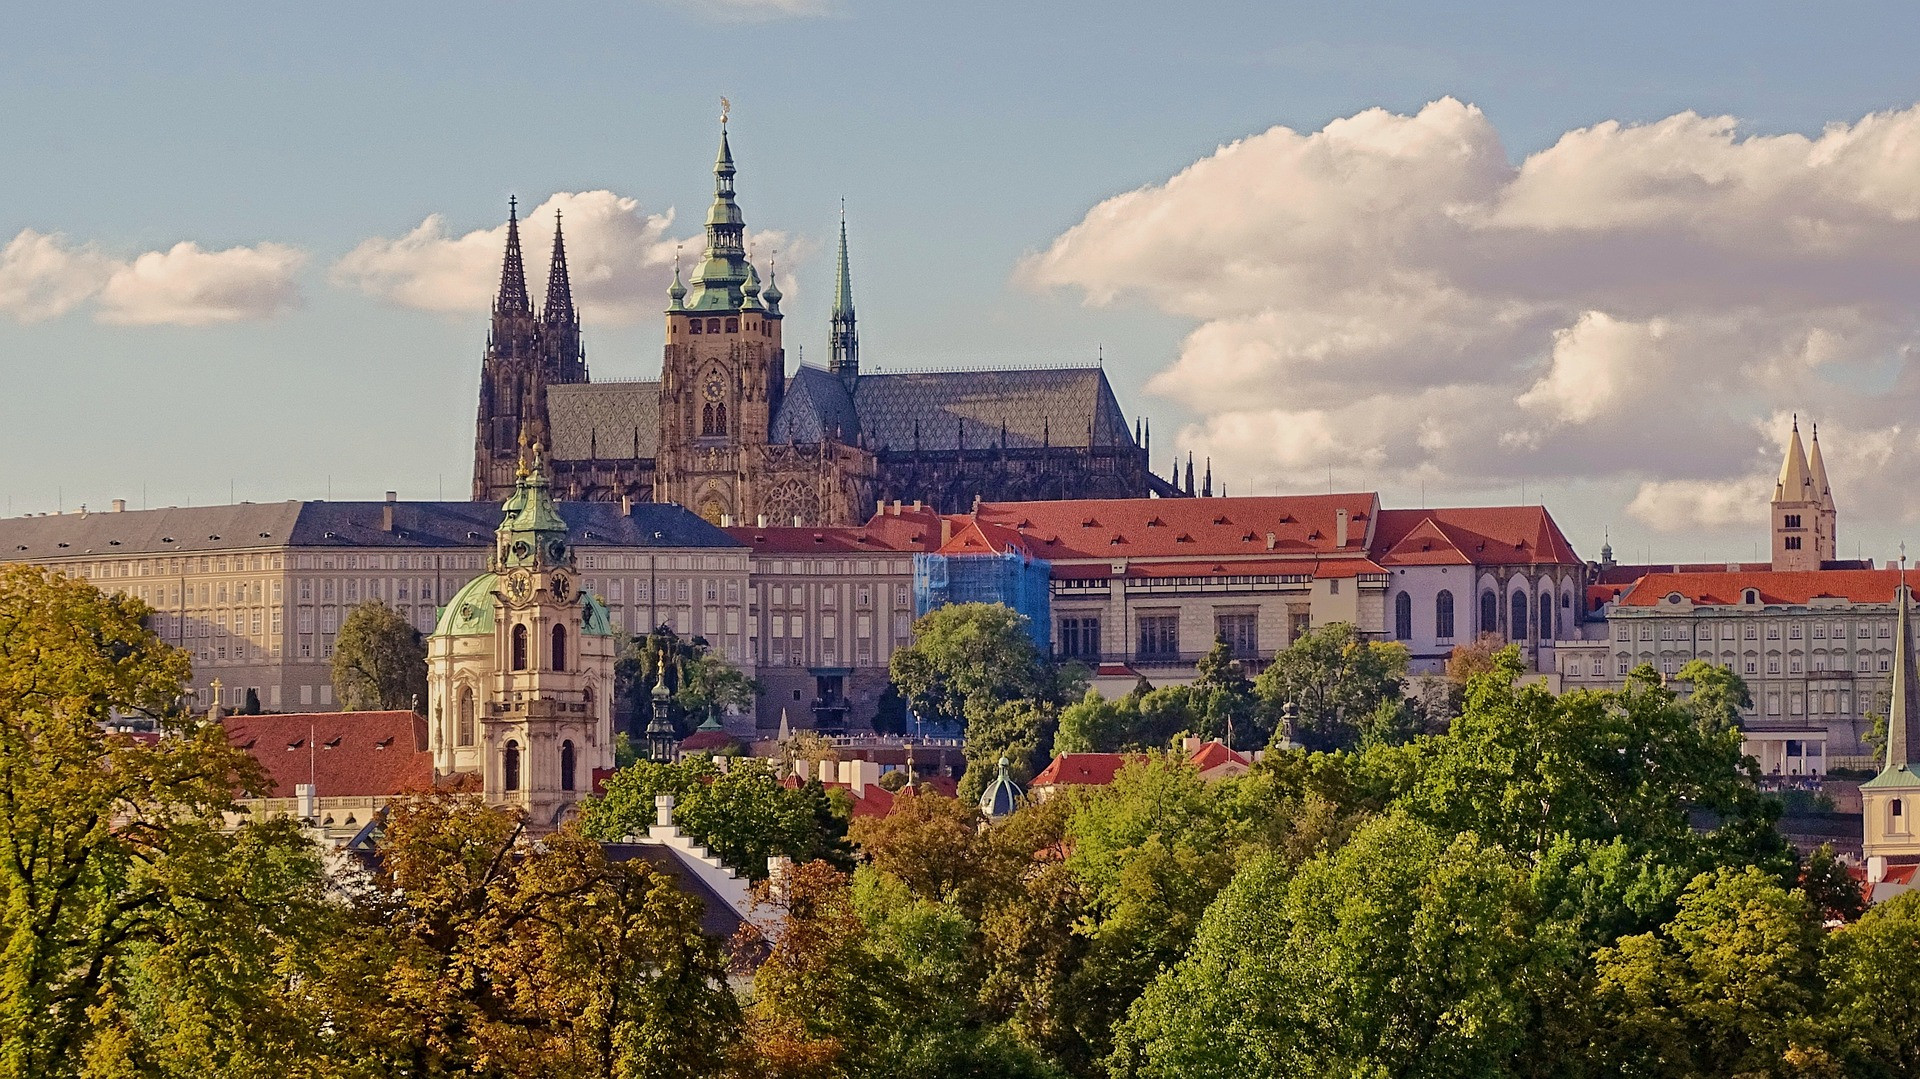 Pražský hrad je komplex záhrad, dvorov, uličiek a historických budov, vrátane gotickej katedrály svätého Víta, kde prebiehali korunovácie českých kráľov a kráľovien. Toto miesto je jedným z najväčších hradných komplexov na svete, má rozlohu asi siedmich futbalových ihrísk. Od 9. storočia bol sídlom panovníkov a oficiálnou rezidenciou hlavy štátu.